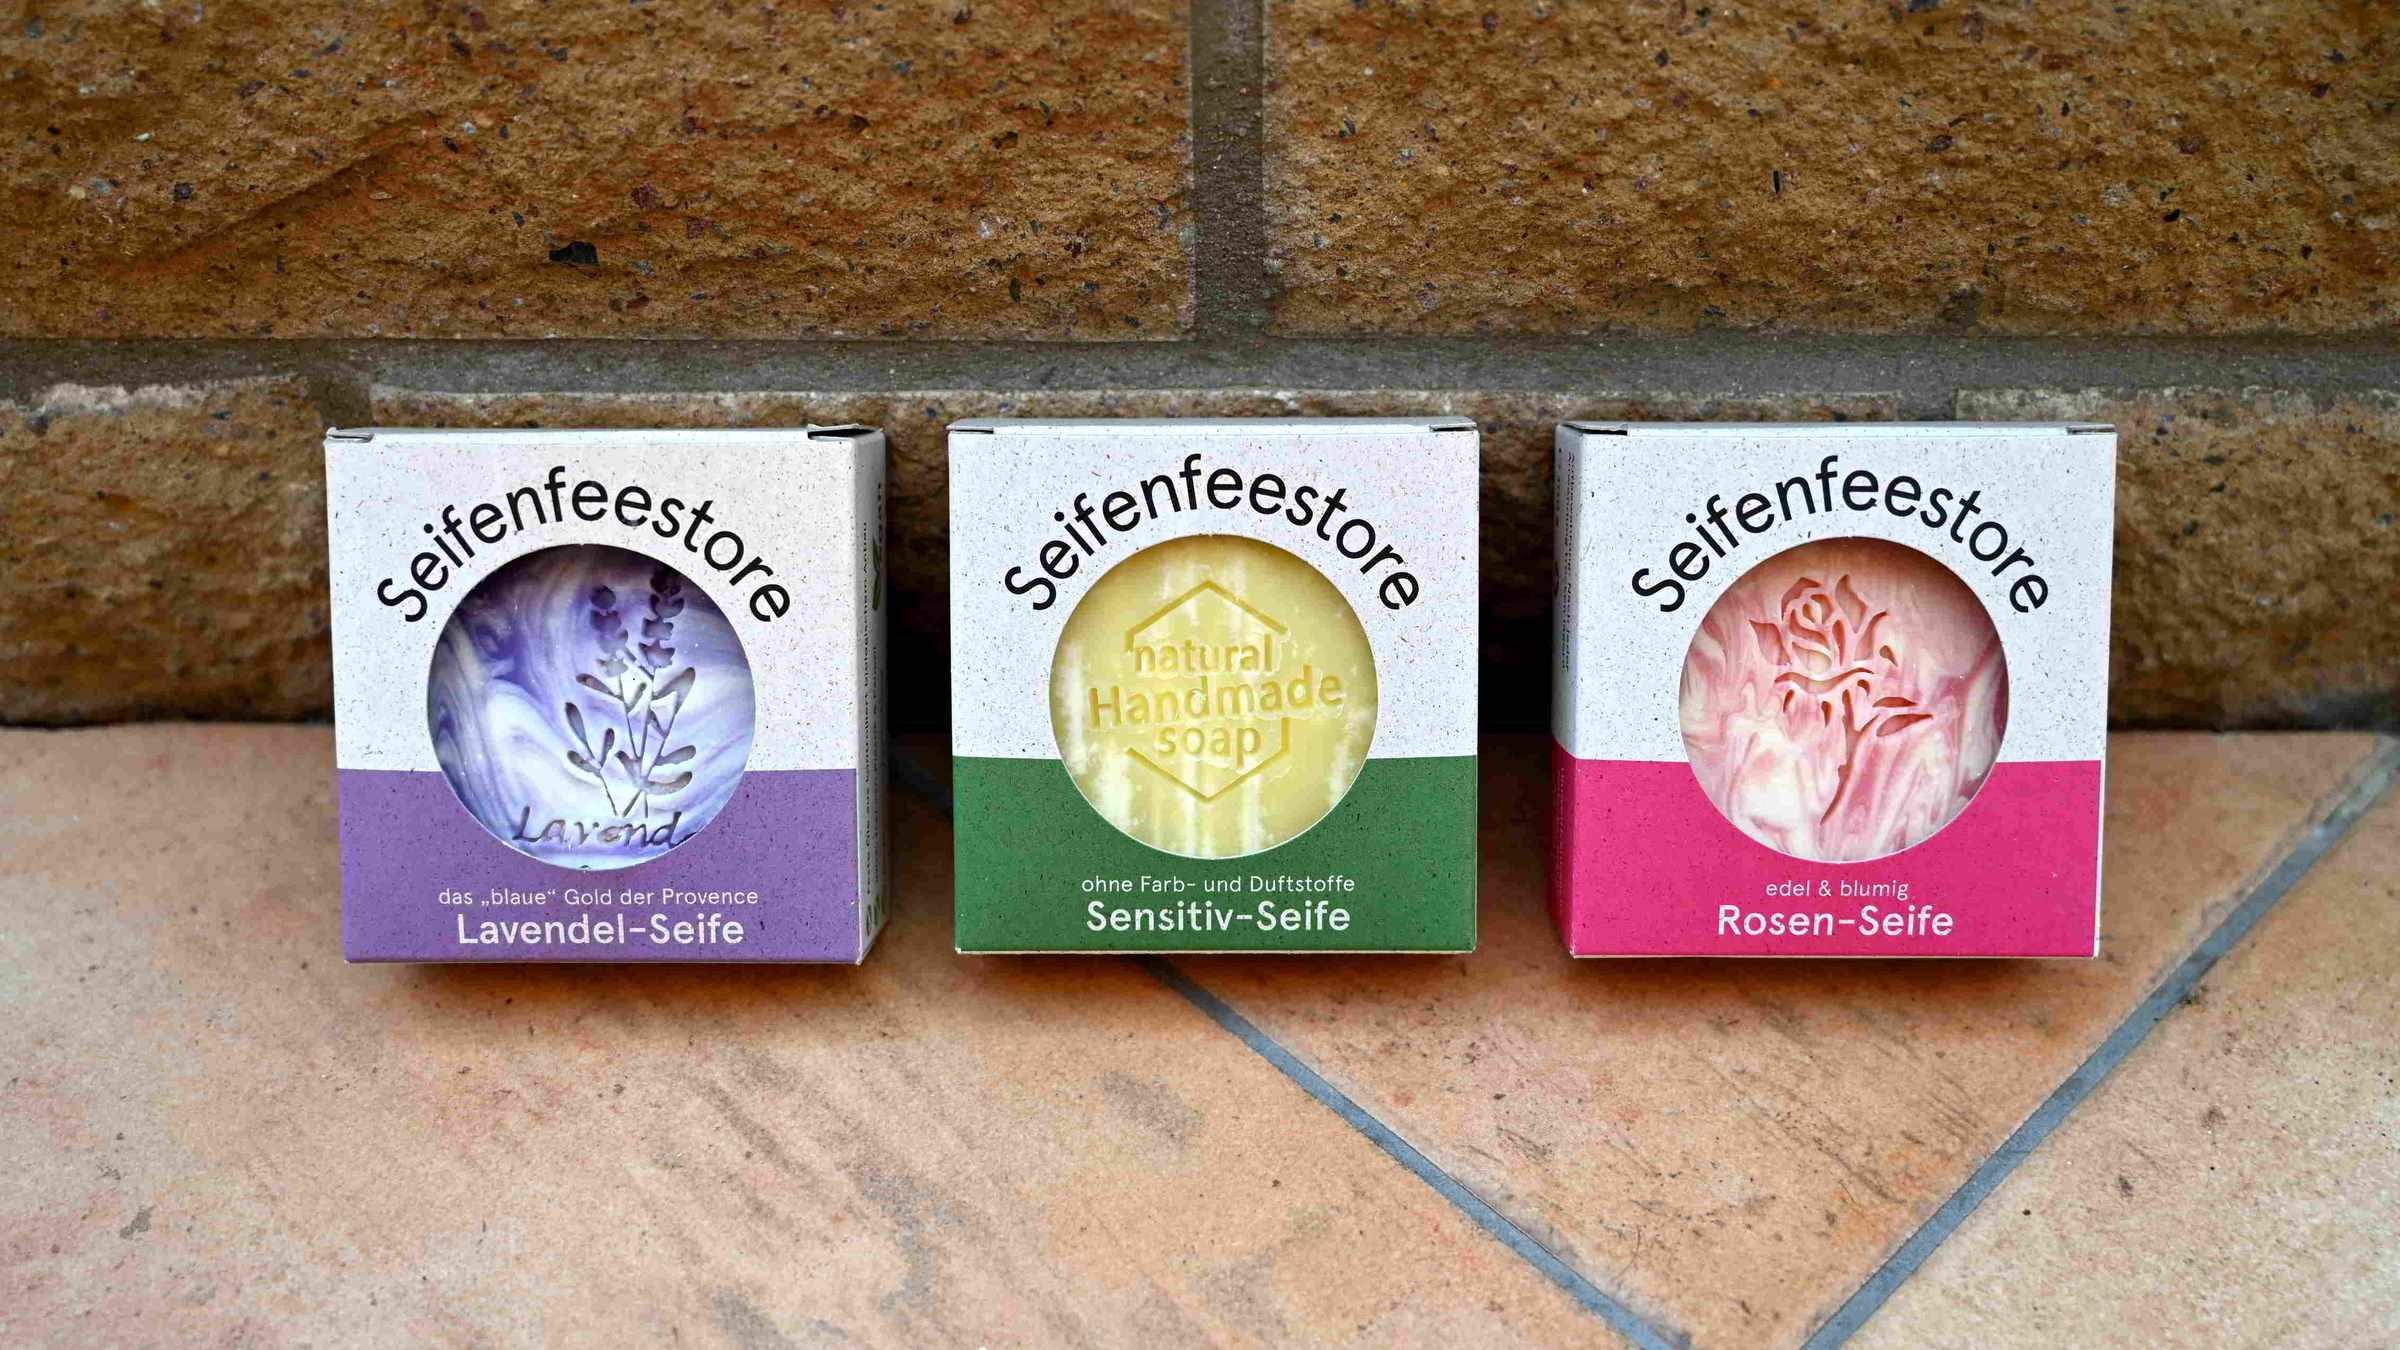 Classic-Line Kollektion vom Seifenfeestore mit klassischen handgemachten Seifen